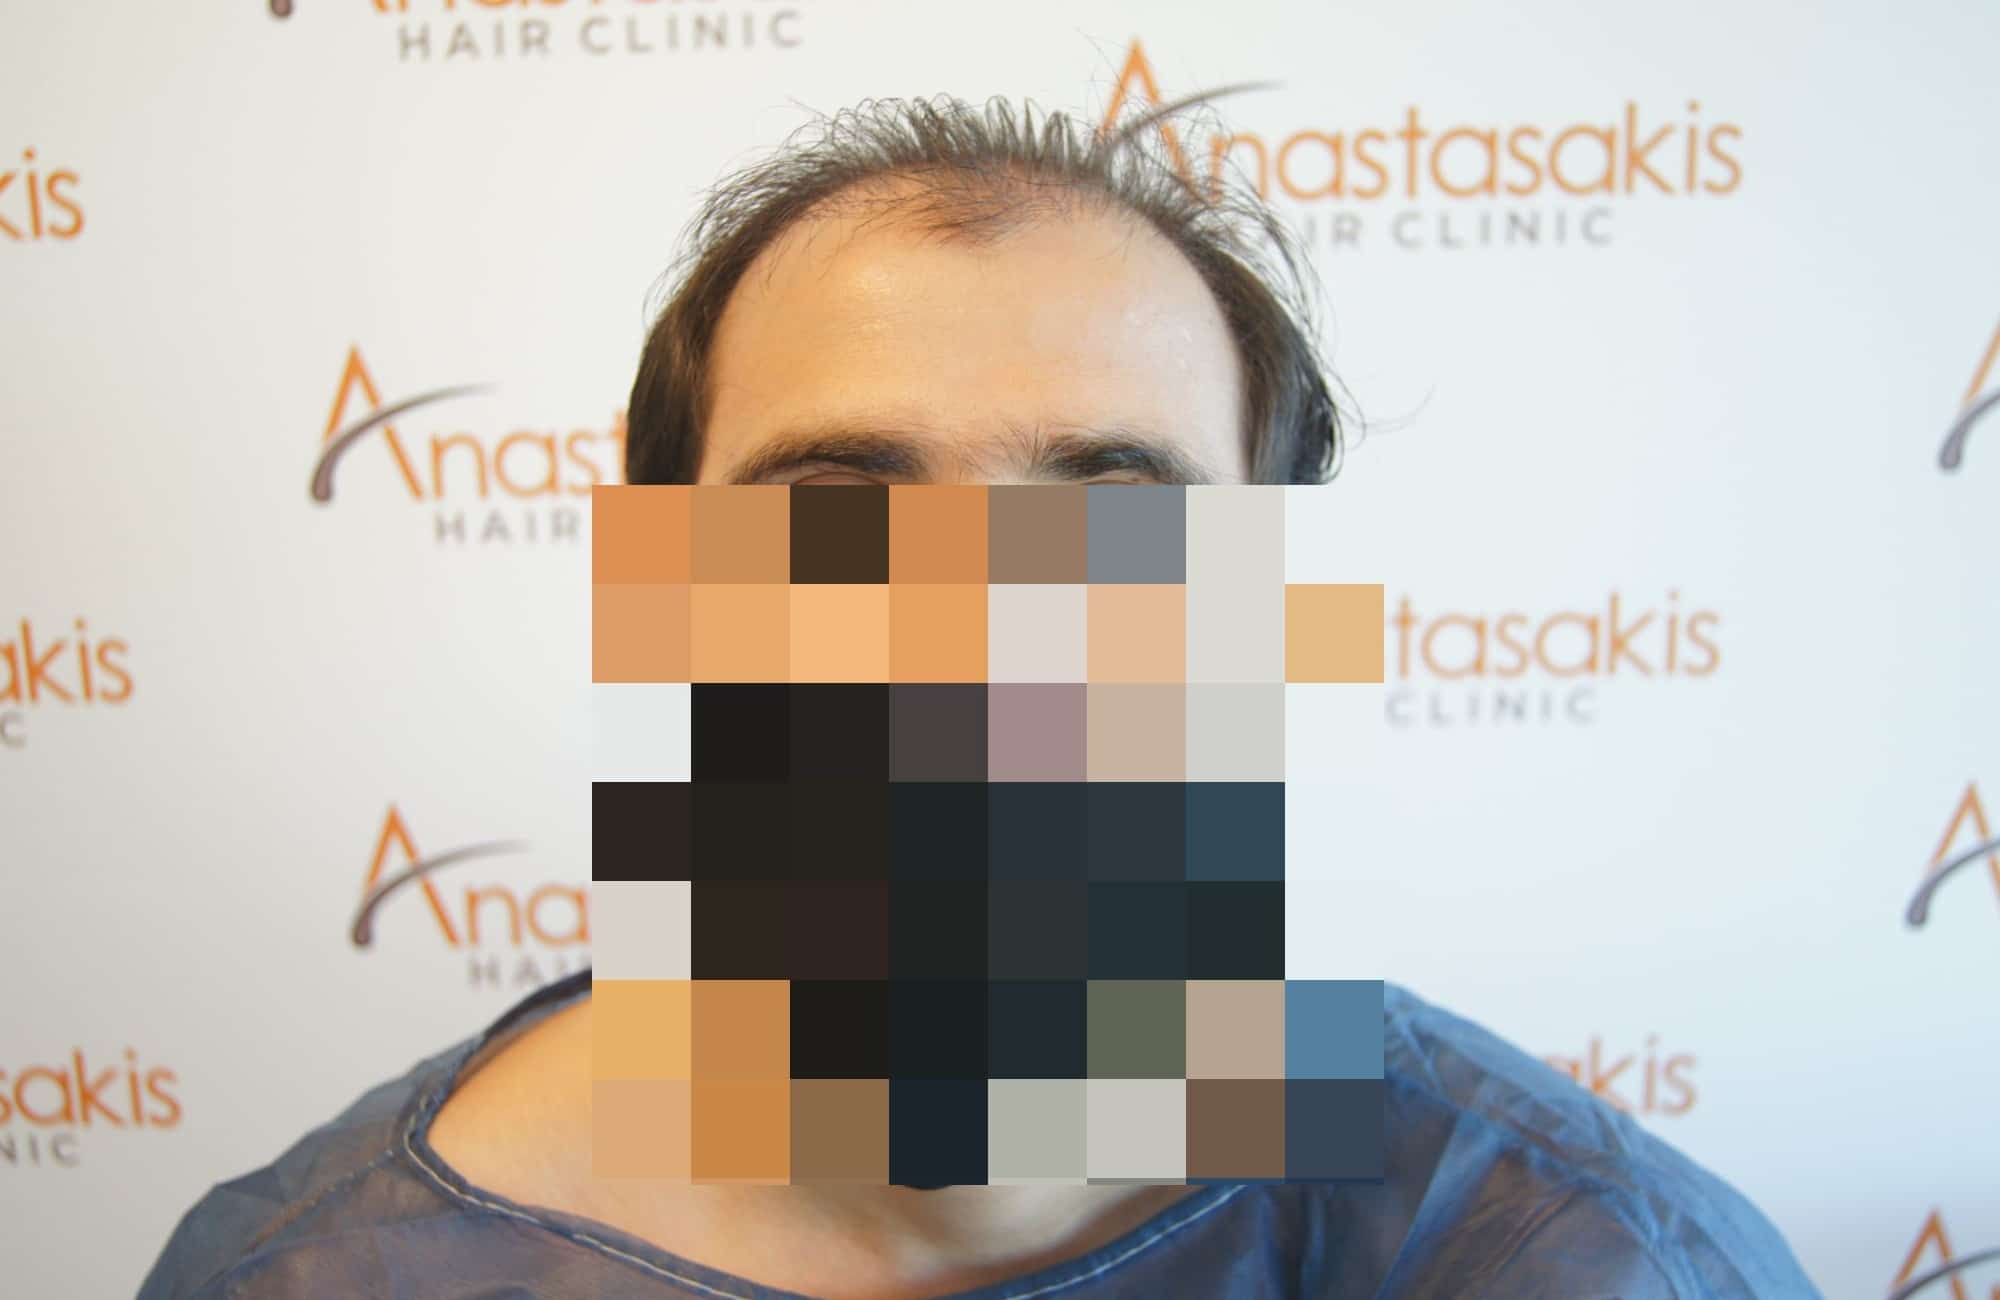 περιστατικο anastasakis hair clinic πριν τη μεταμοσχευση μαλλιων με fue - fullface